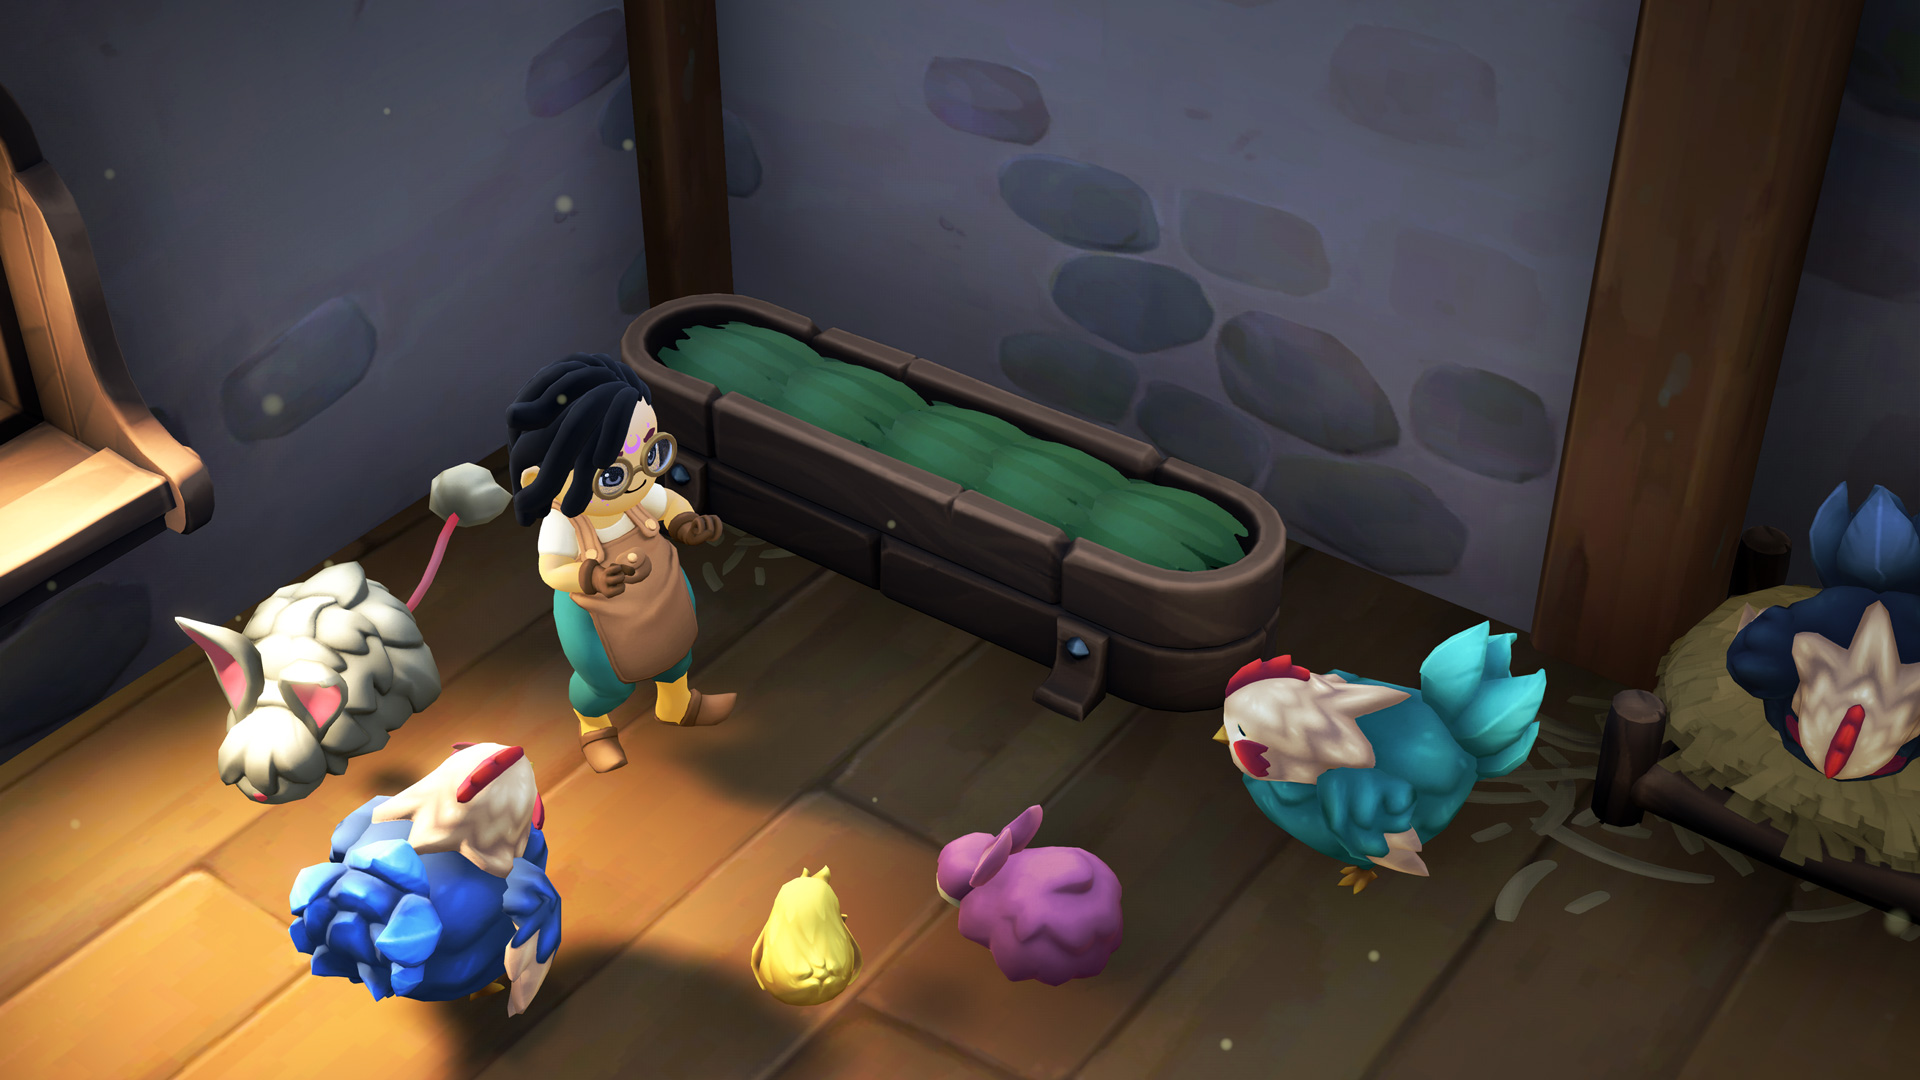 Une capture d'écran de Fae Farm illustrant l'intérieur d'une grange avec des animaux fantastiques entourant un personnage joueur